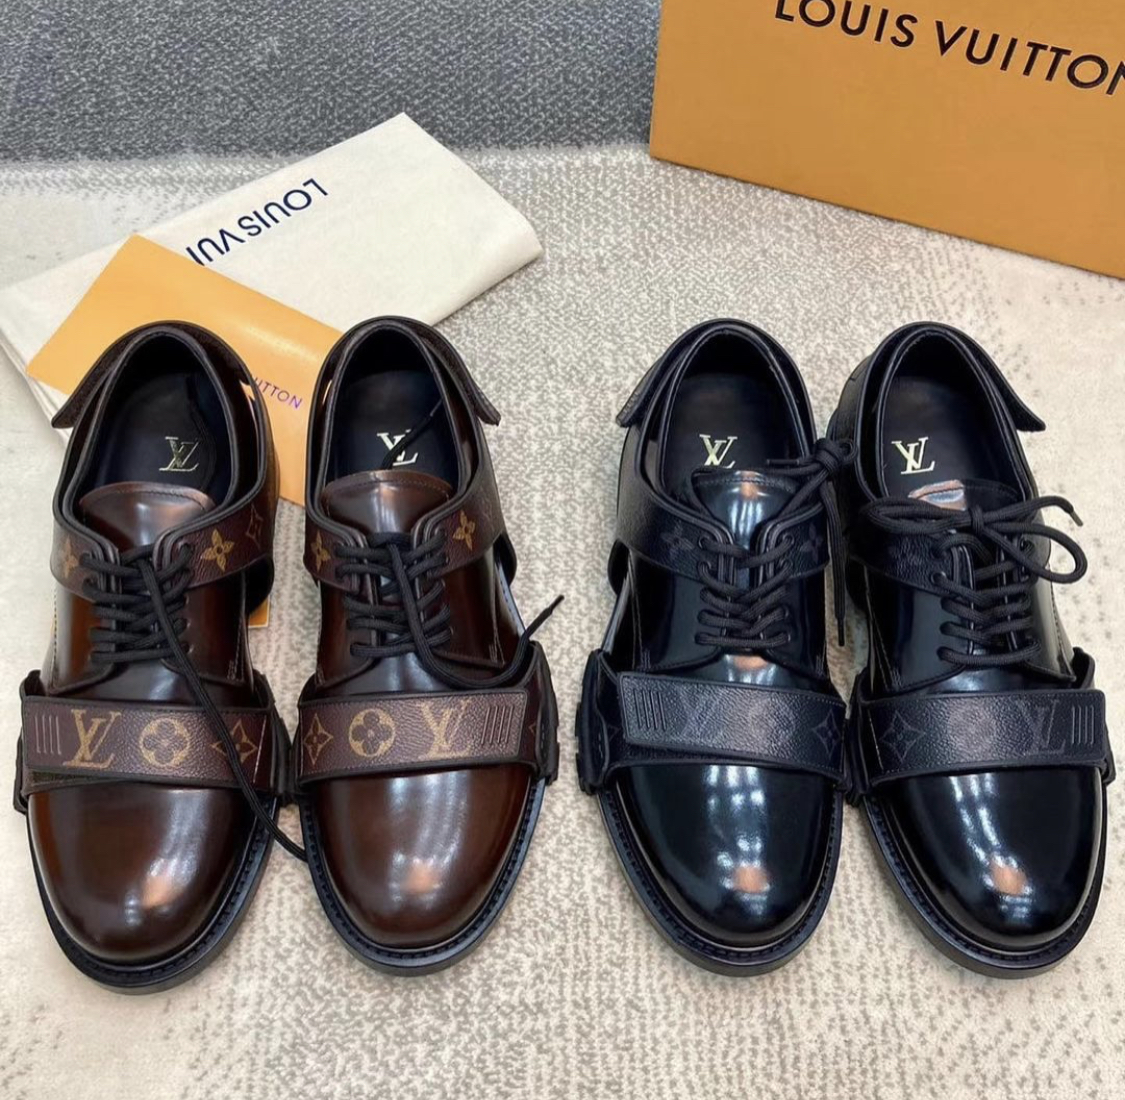 Willard Katsande's expensive Louis Vuitton formal shoe